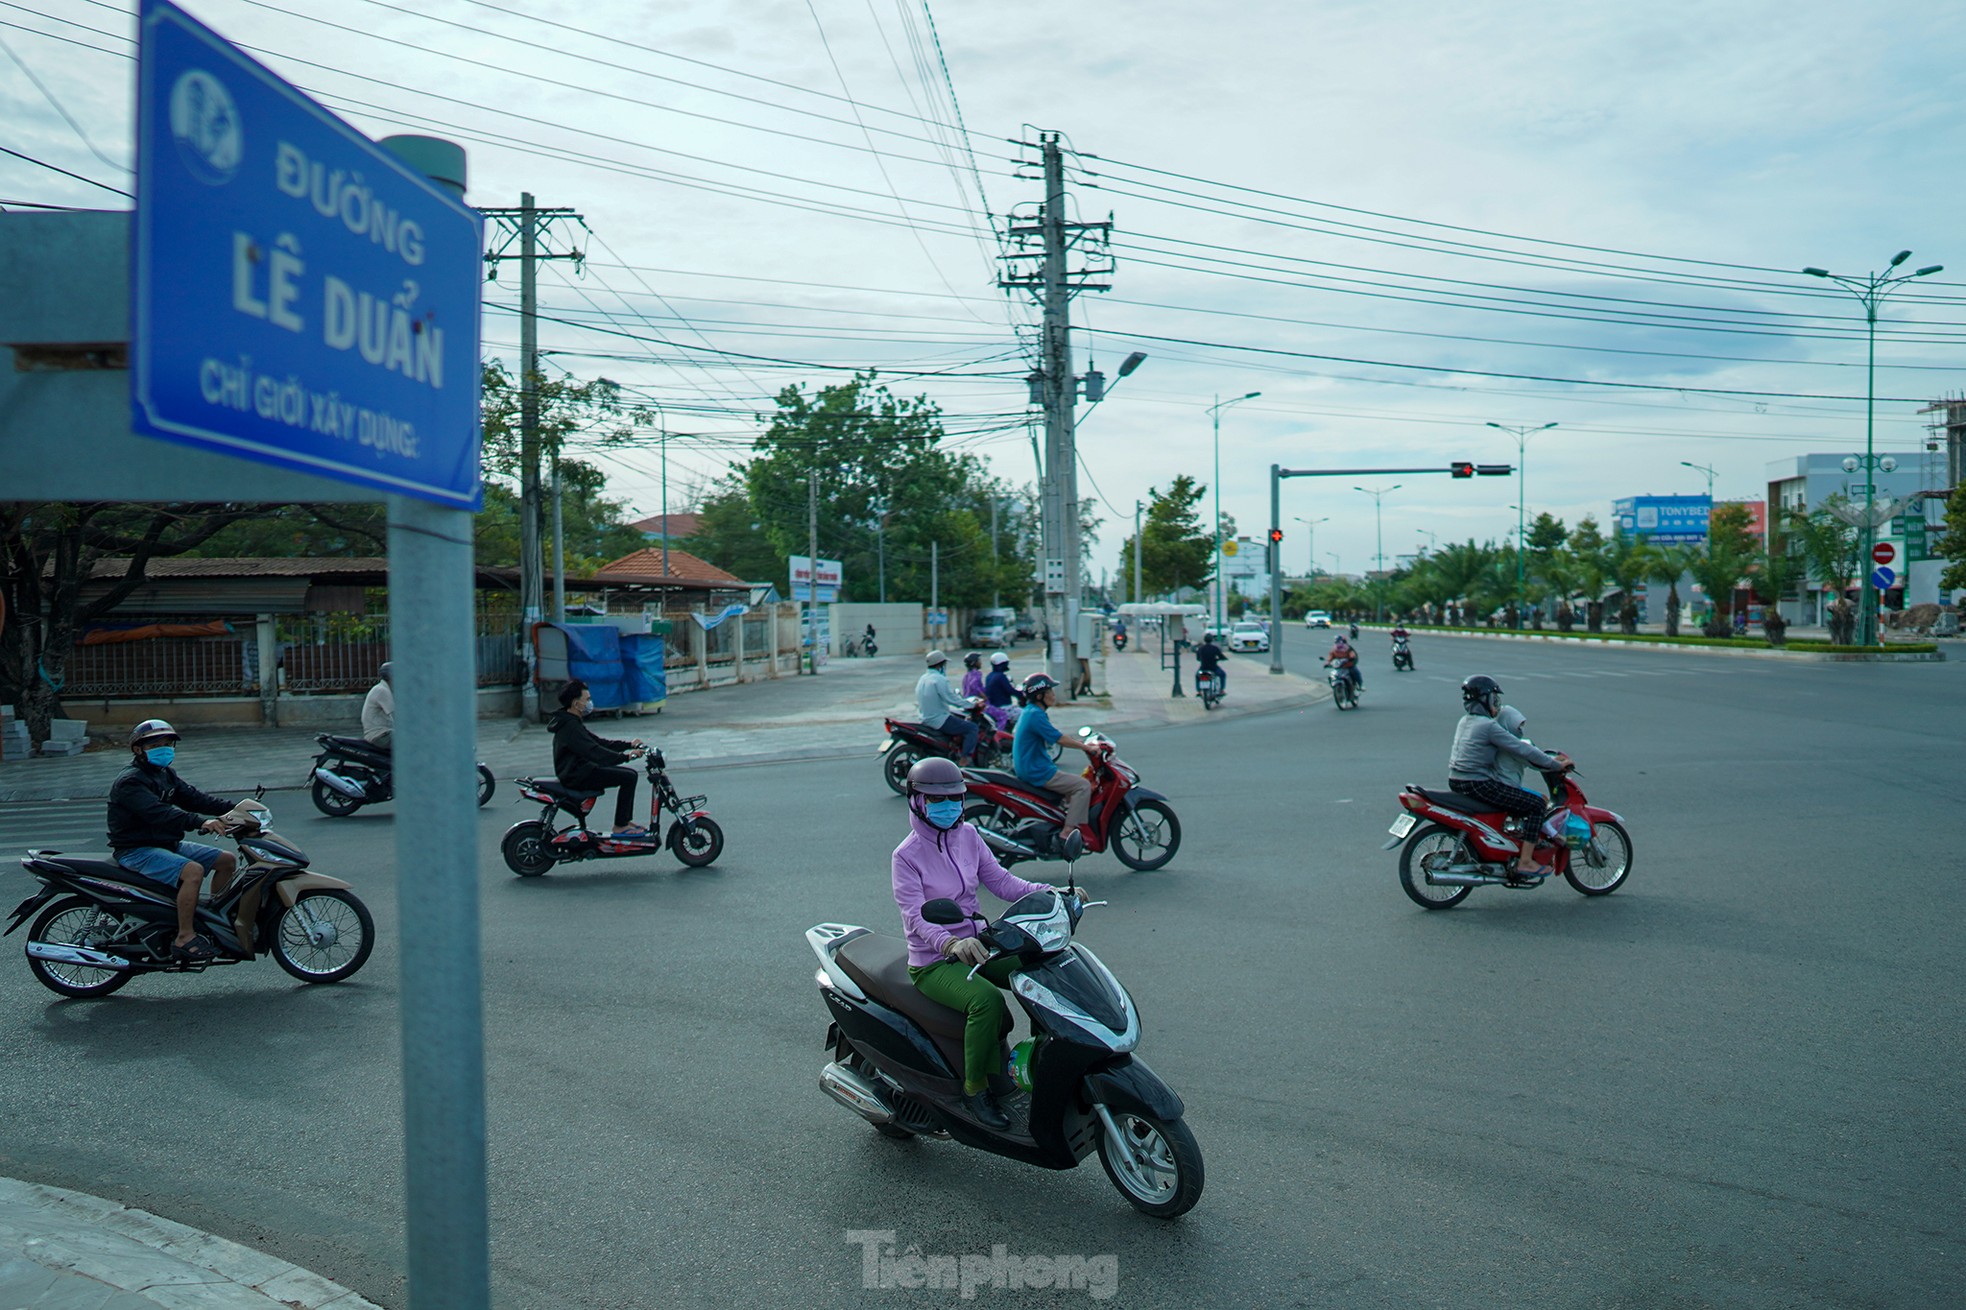 Đại lộ đẹp nhất Bình Thuận bị điều tra vì đền bù sai 45 tỷ đồng